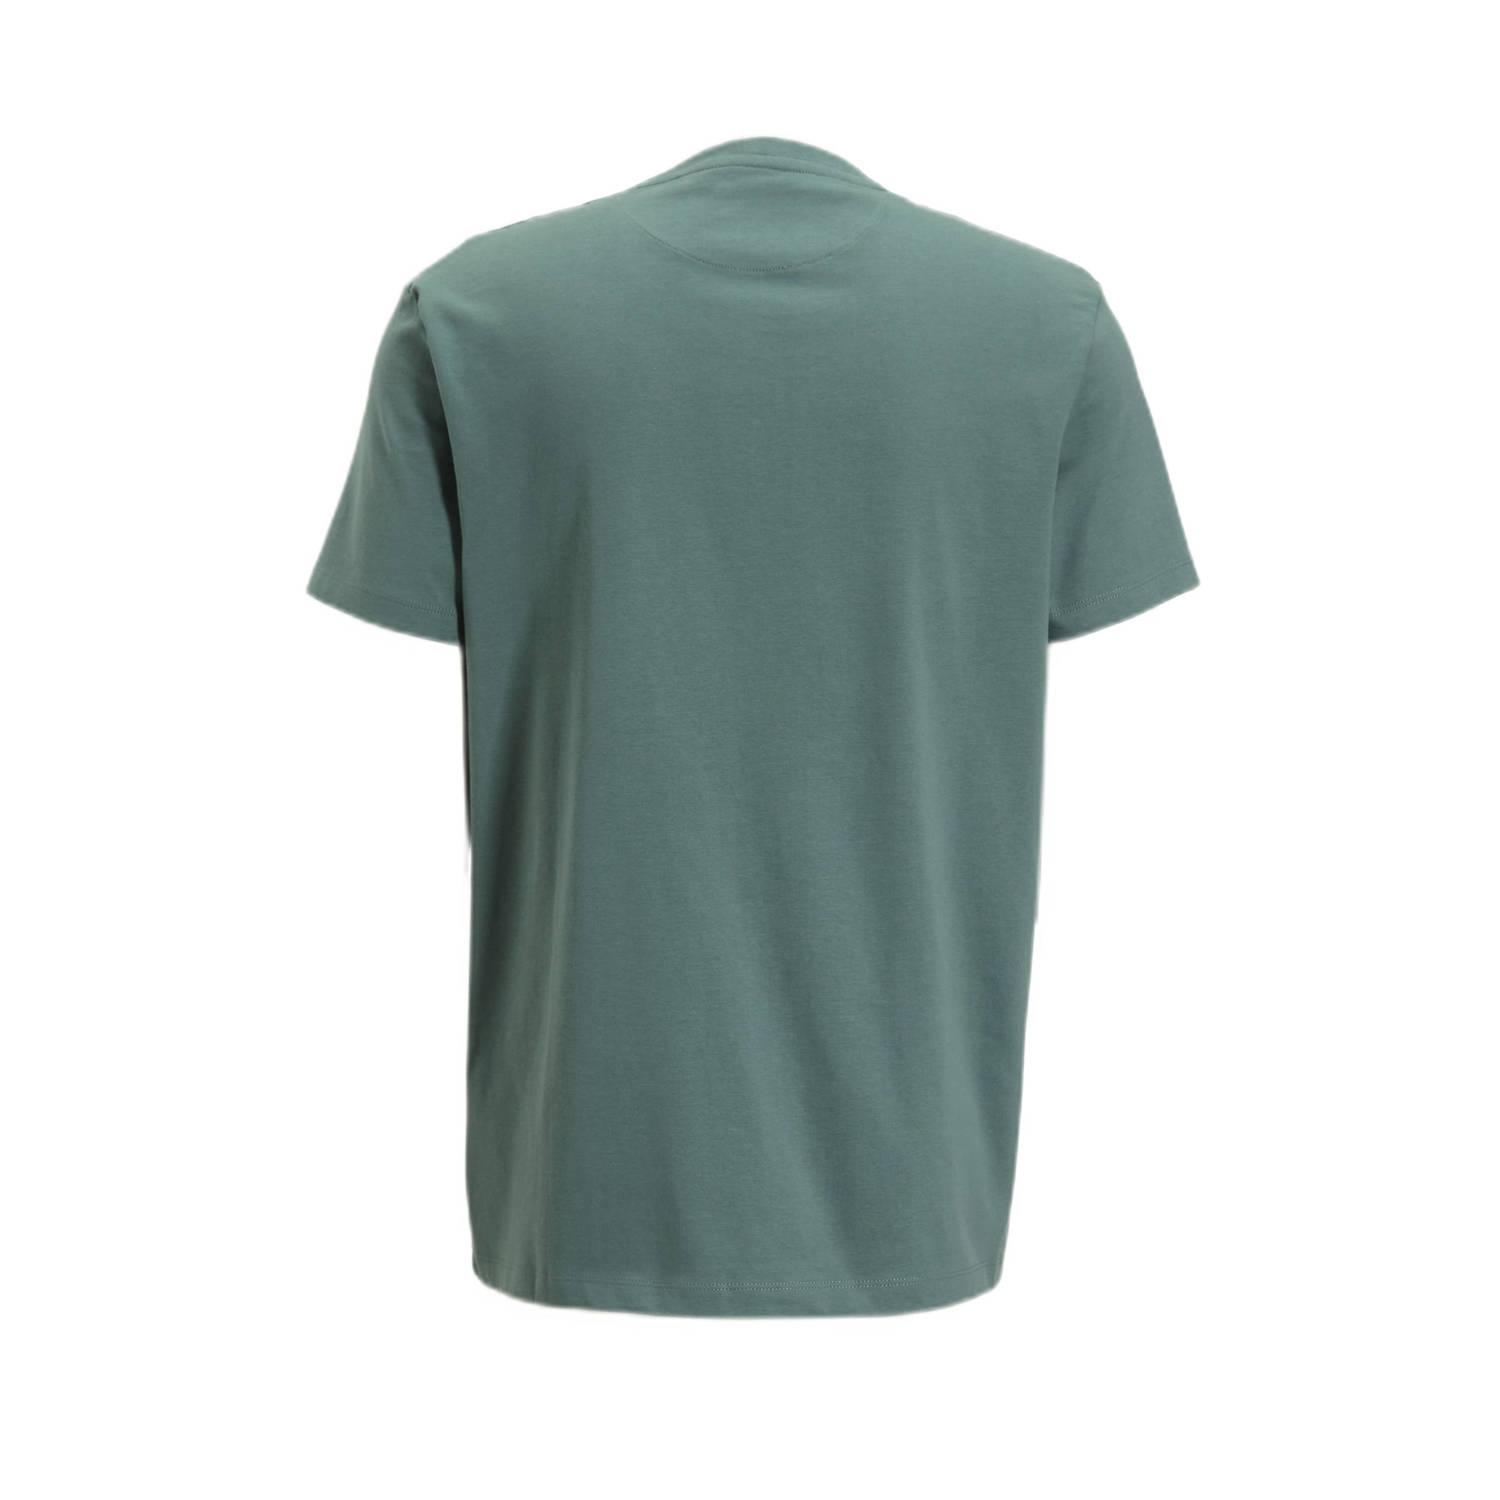 Timberland T-shirt van biologisch katoen groen